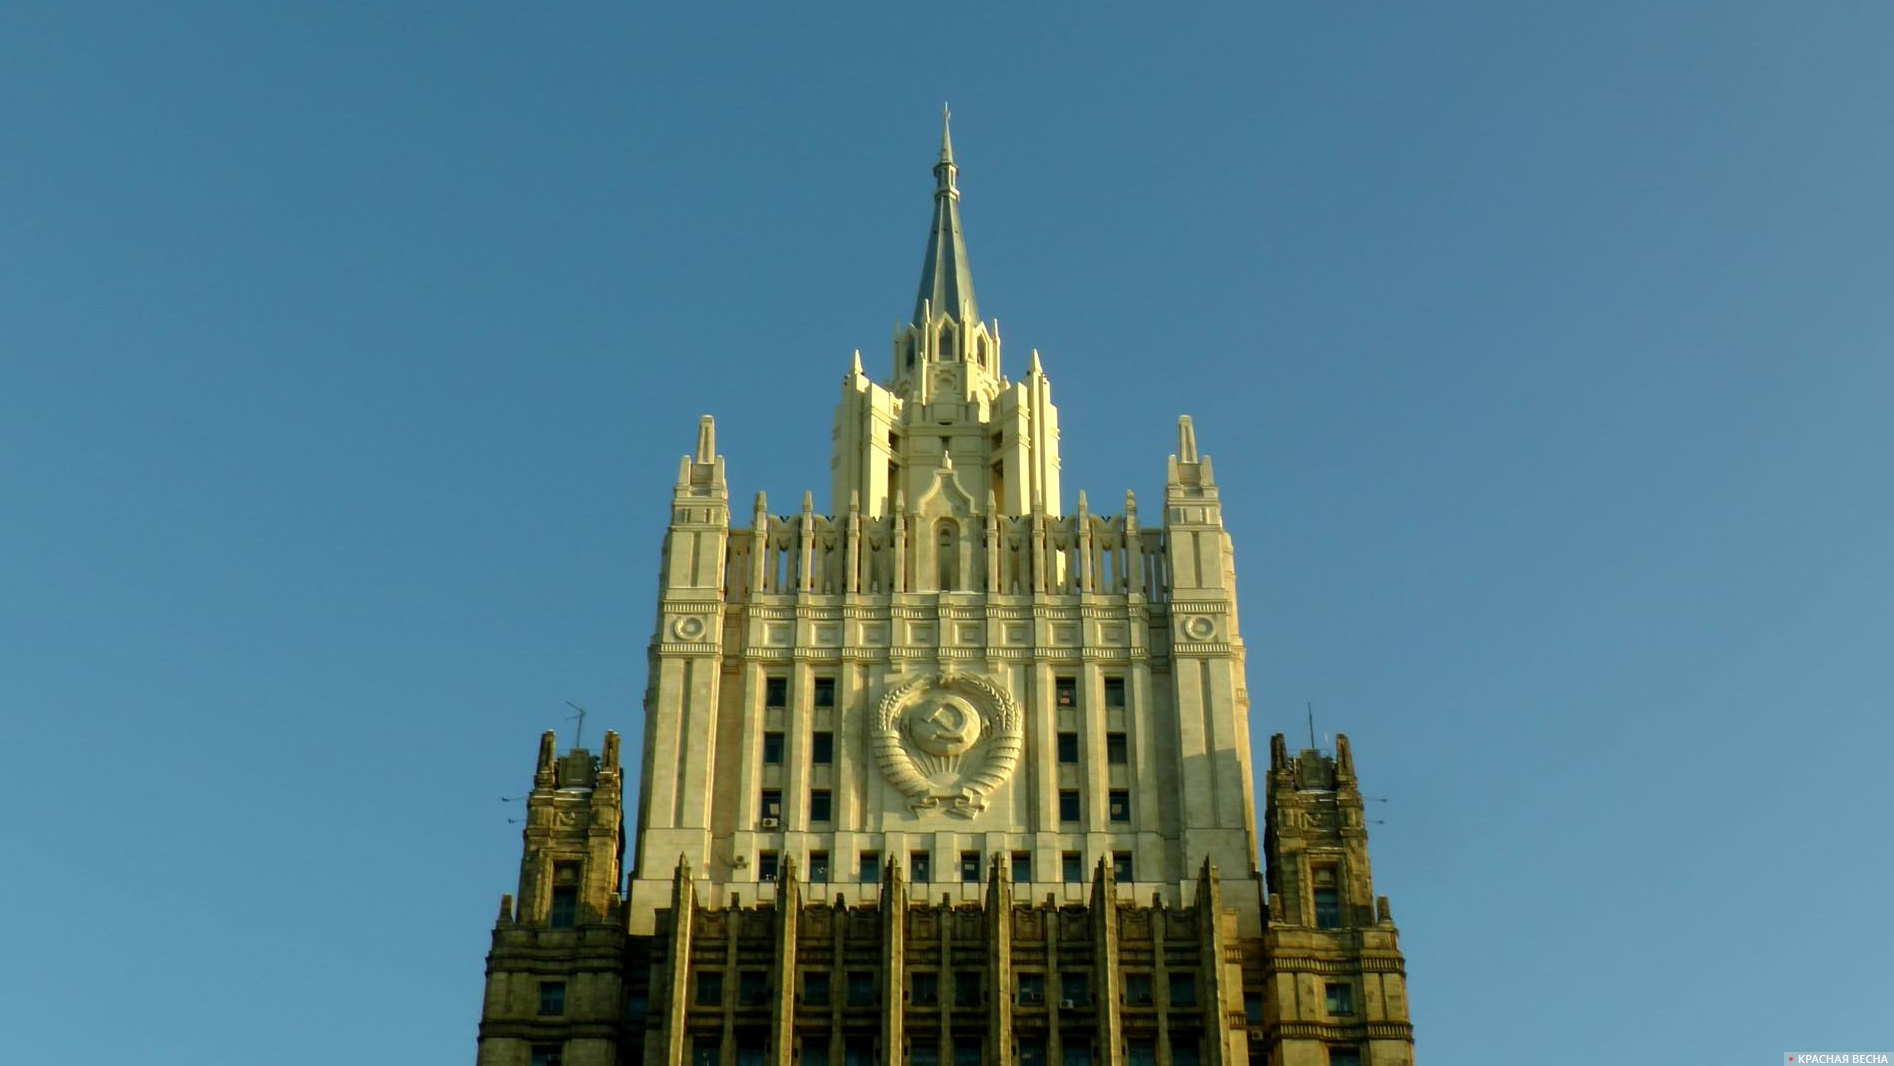 Министерство иностранных дел (МИД РФ)